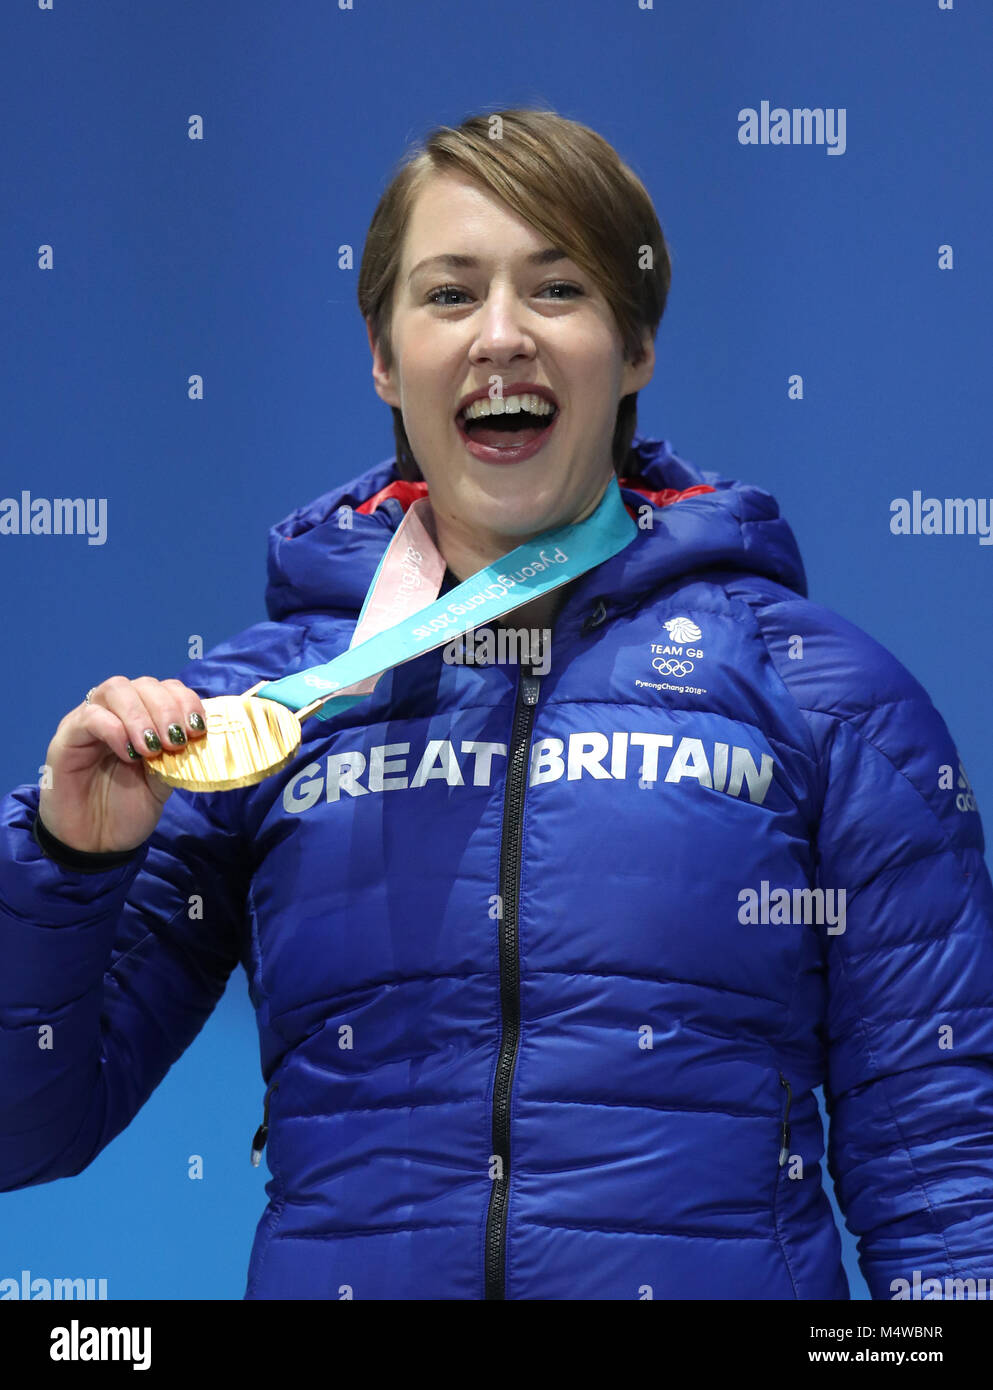 Gran Bretaña Lizzy Yarnold posa con su medalla de oro durante la ceremonia de entrega de medallas para el esqueleto de la mujer el día nueve de los Juegos Olímpicos de Invierno de 2018 PyeongChang en Corea del Sur. Foto de stock